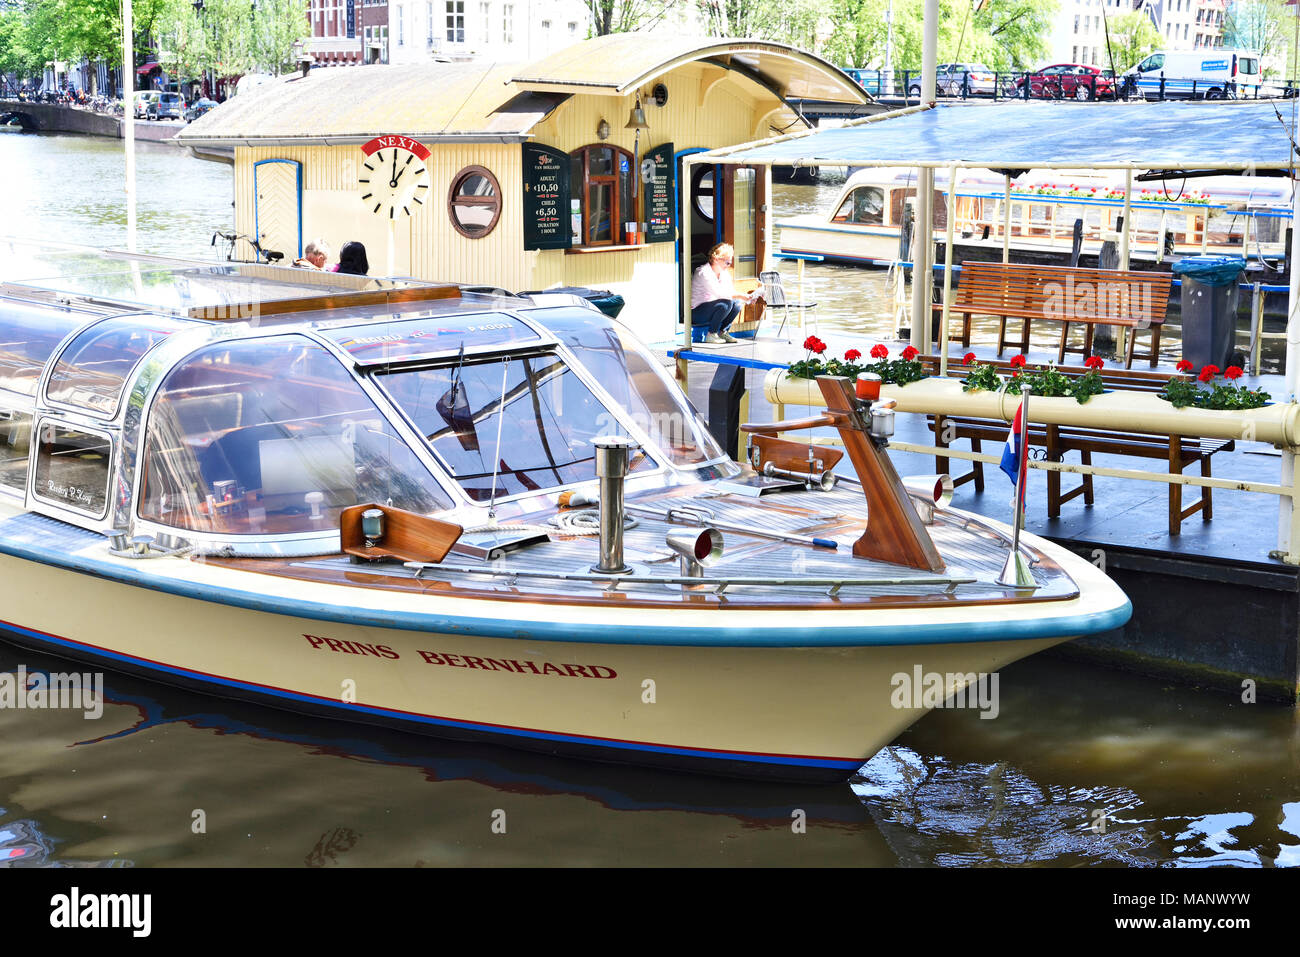 Visites tourboat ou de navires de passagers à Amsterdam, de la rivière Amstel. Scène d'été avec tour en bateau. Banque D'Images